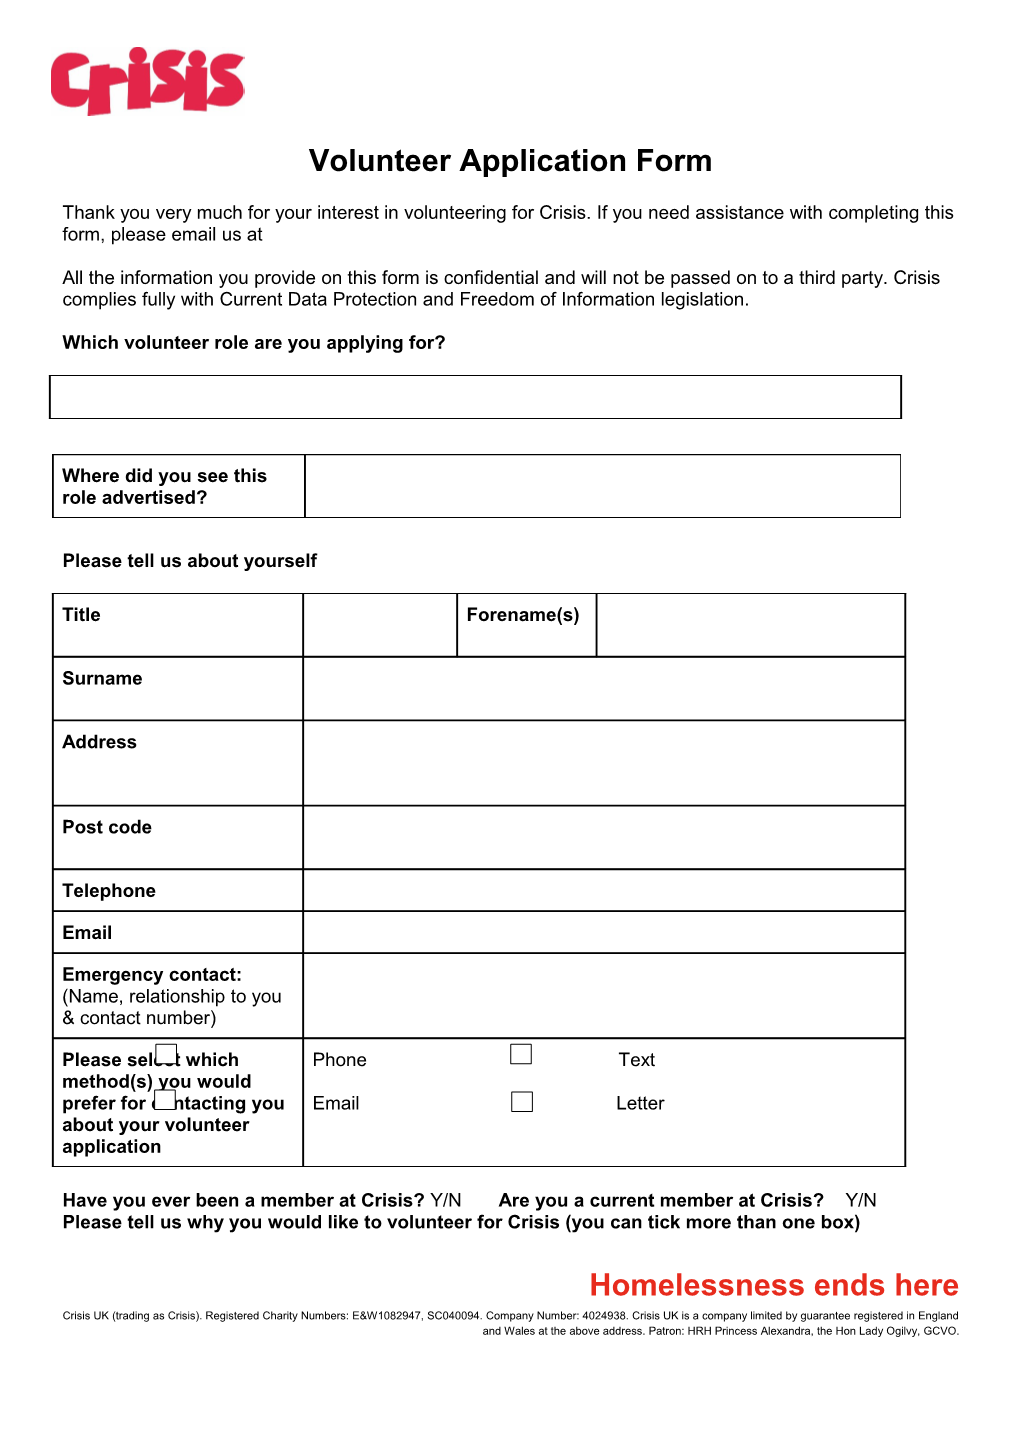 Volunteer Application Form Blank